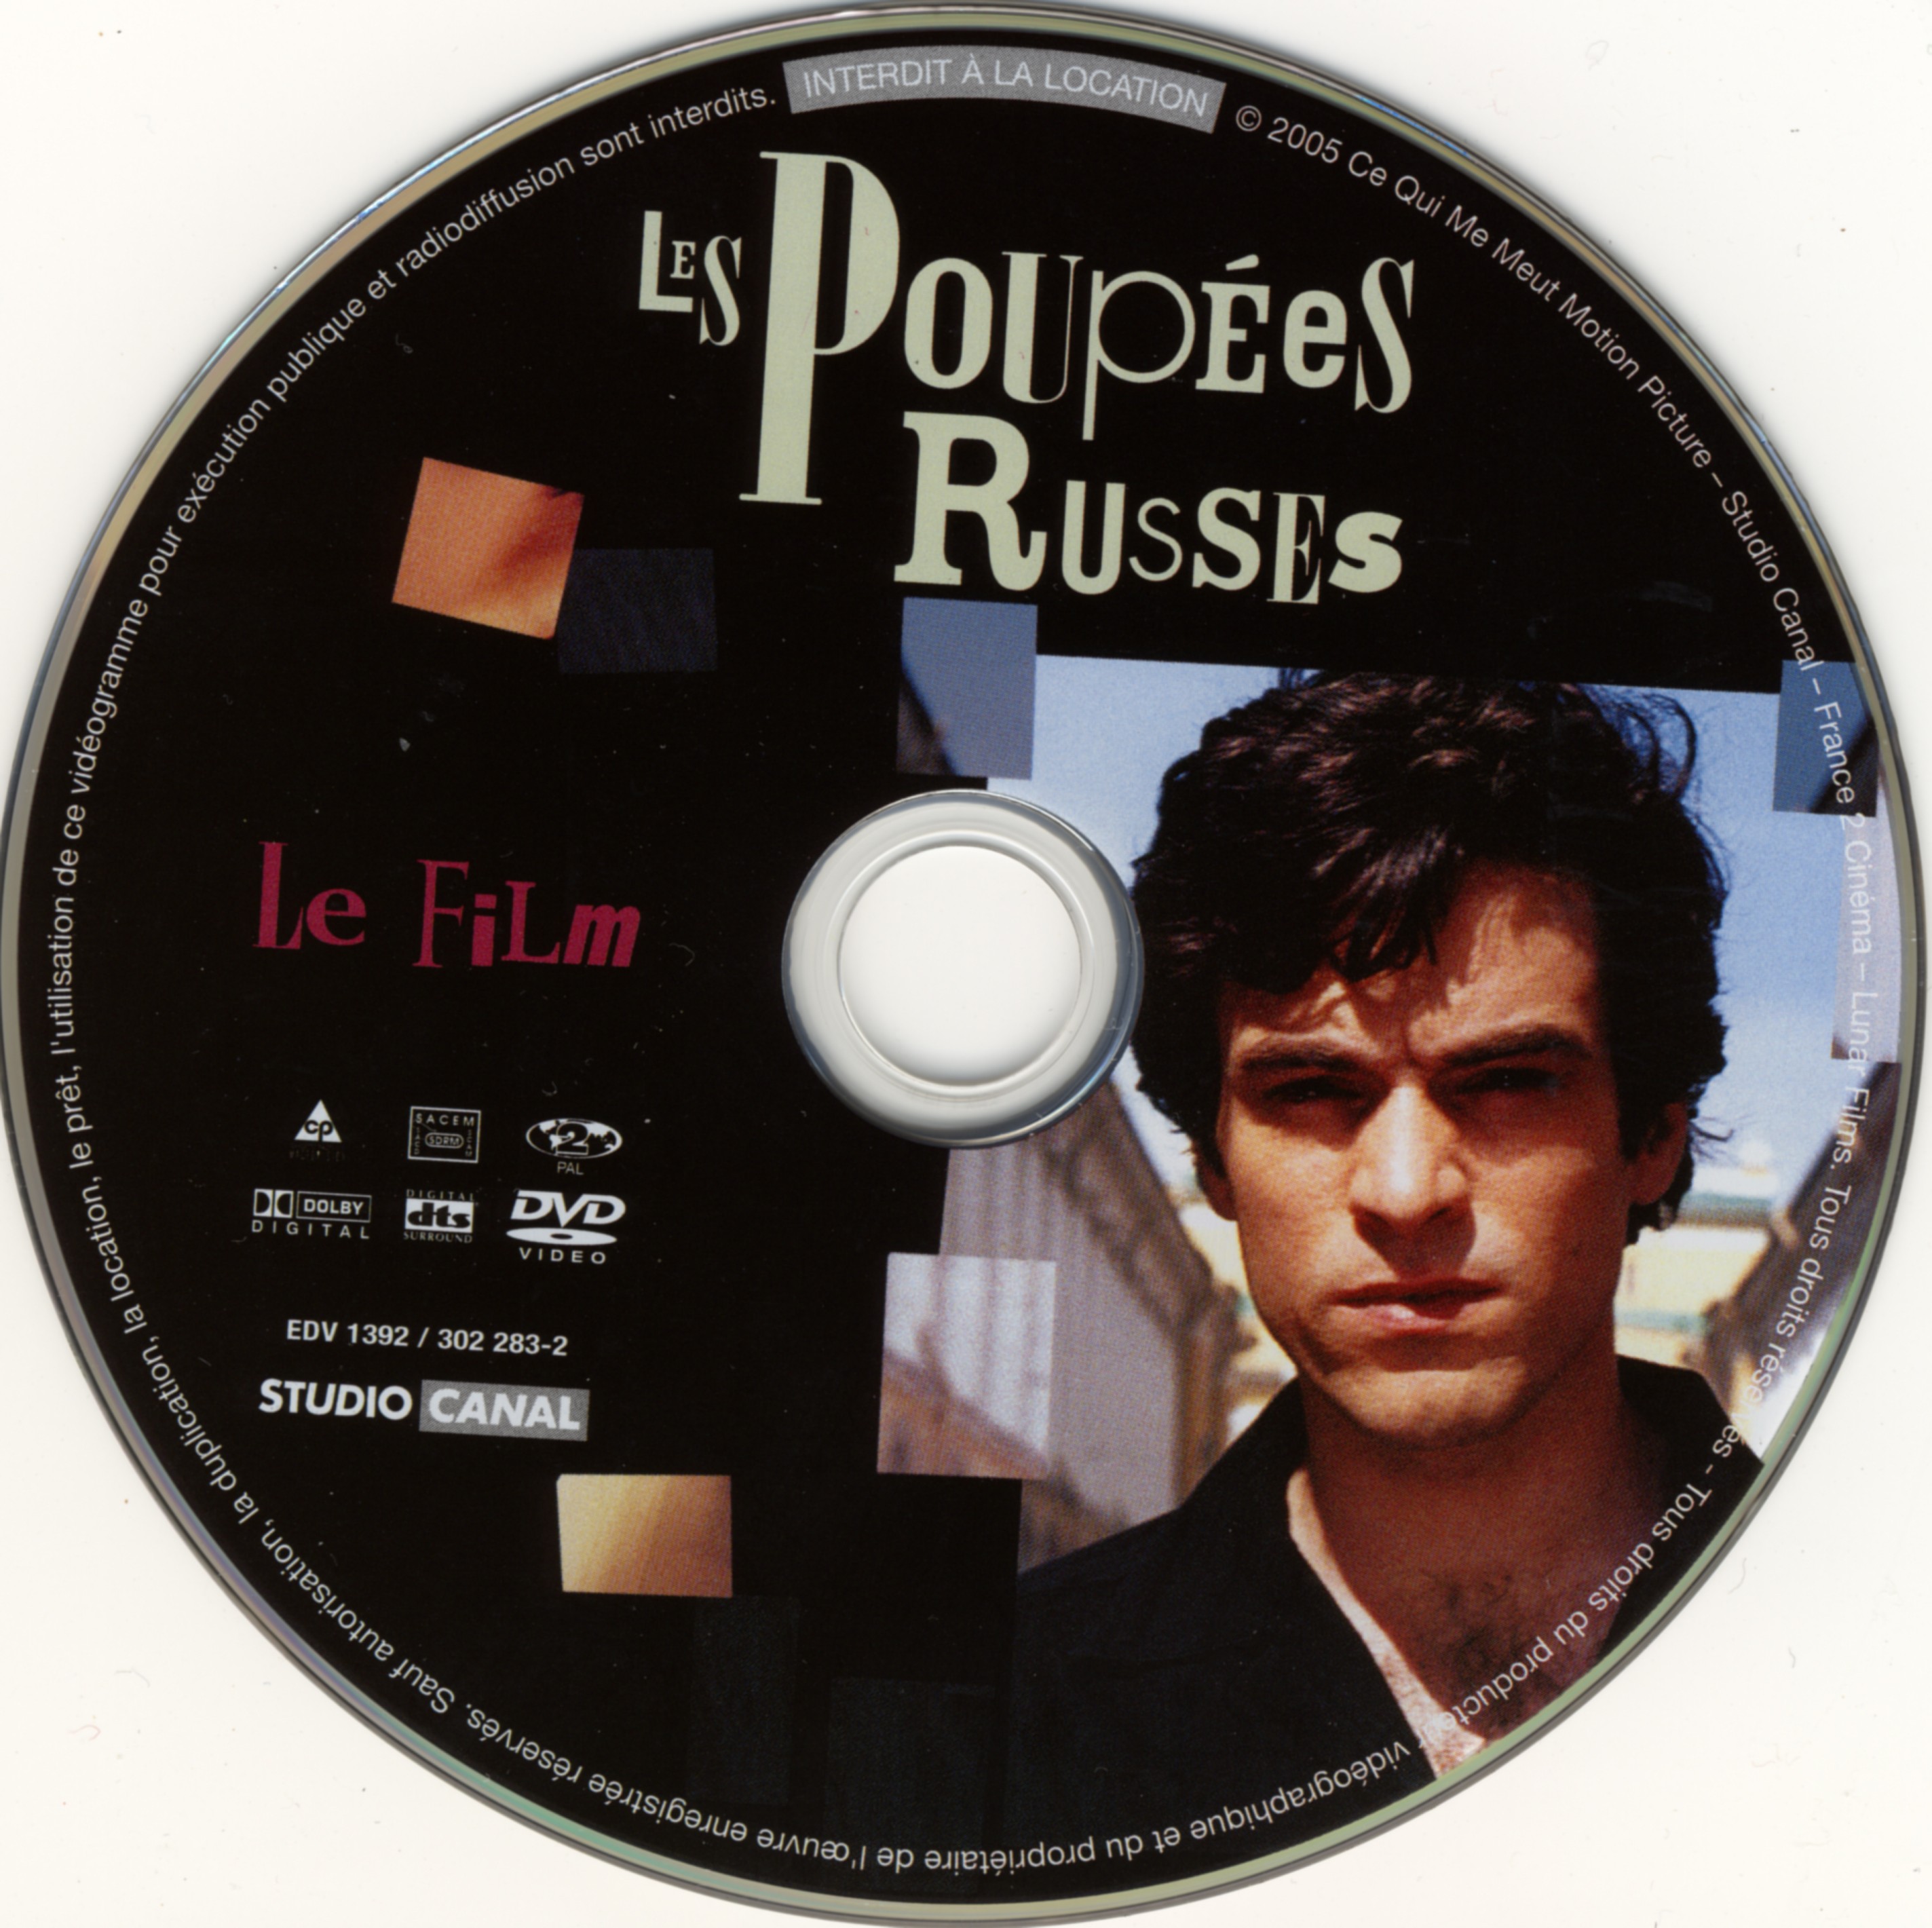 Les poupees russes DISC 1